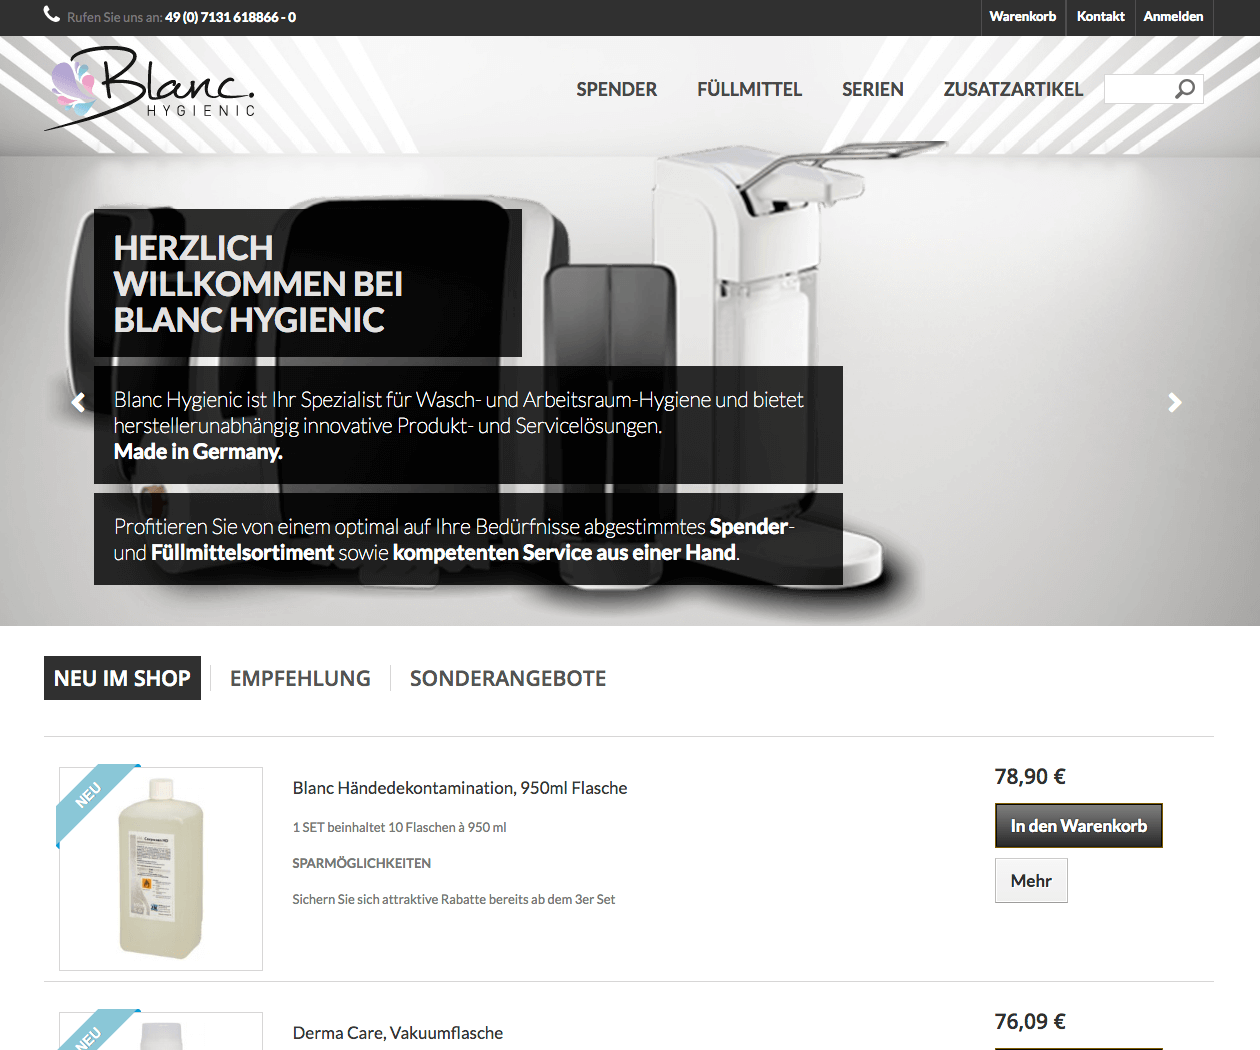 Prestashop-Shop für Blanc Hygienic